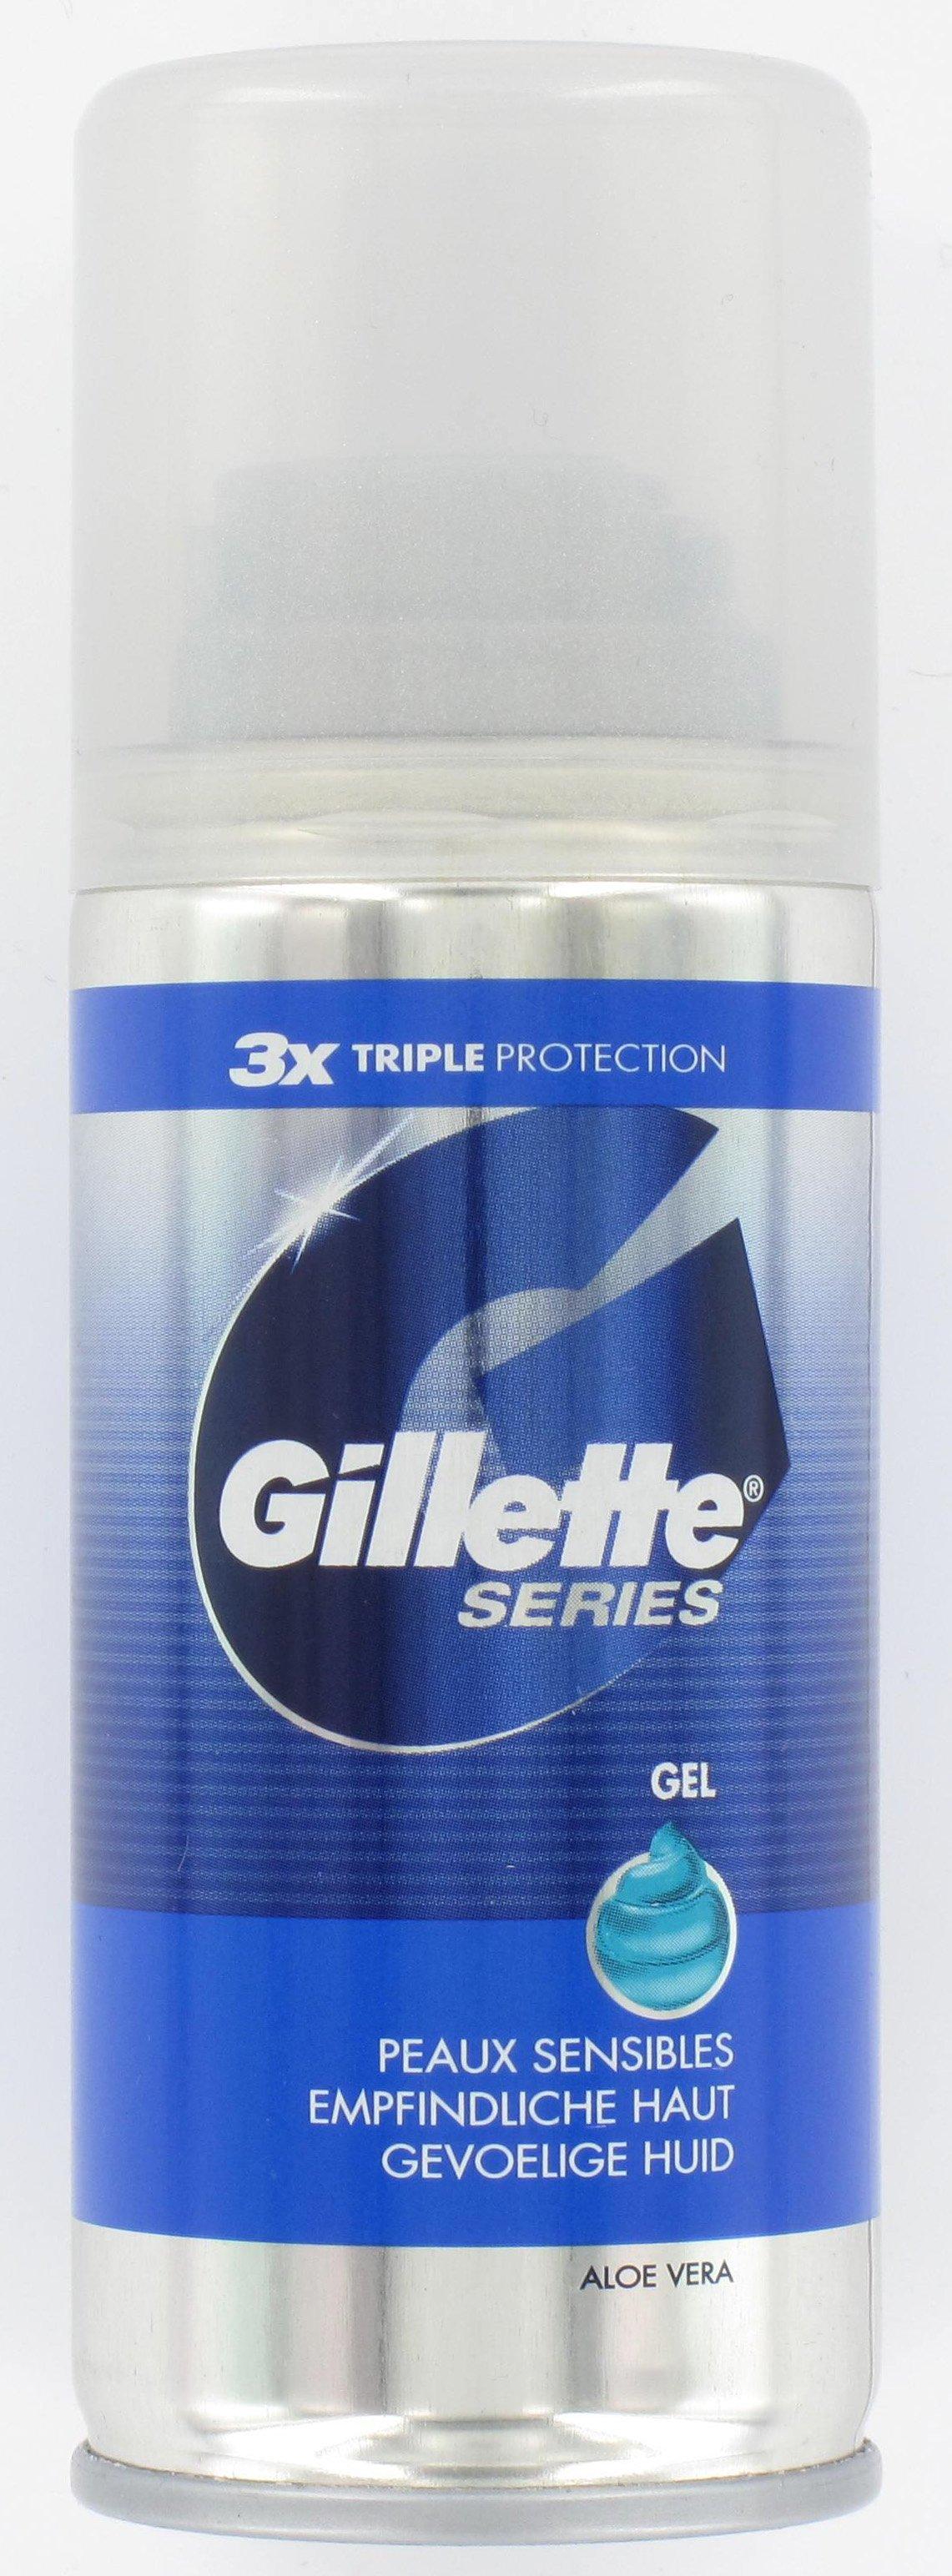 Image of Gillette Series Rasiergel Empfindliche Haut - 75ml